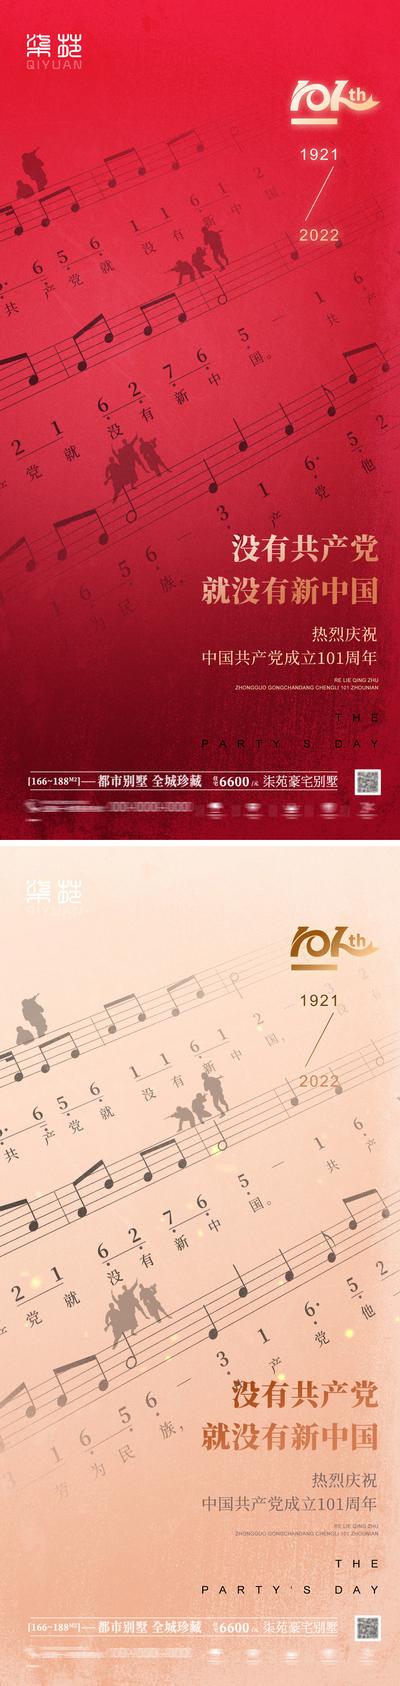 南门网 海报 房地产 公历节日 建党节 101周年 乐谱 音乐 军人 系列